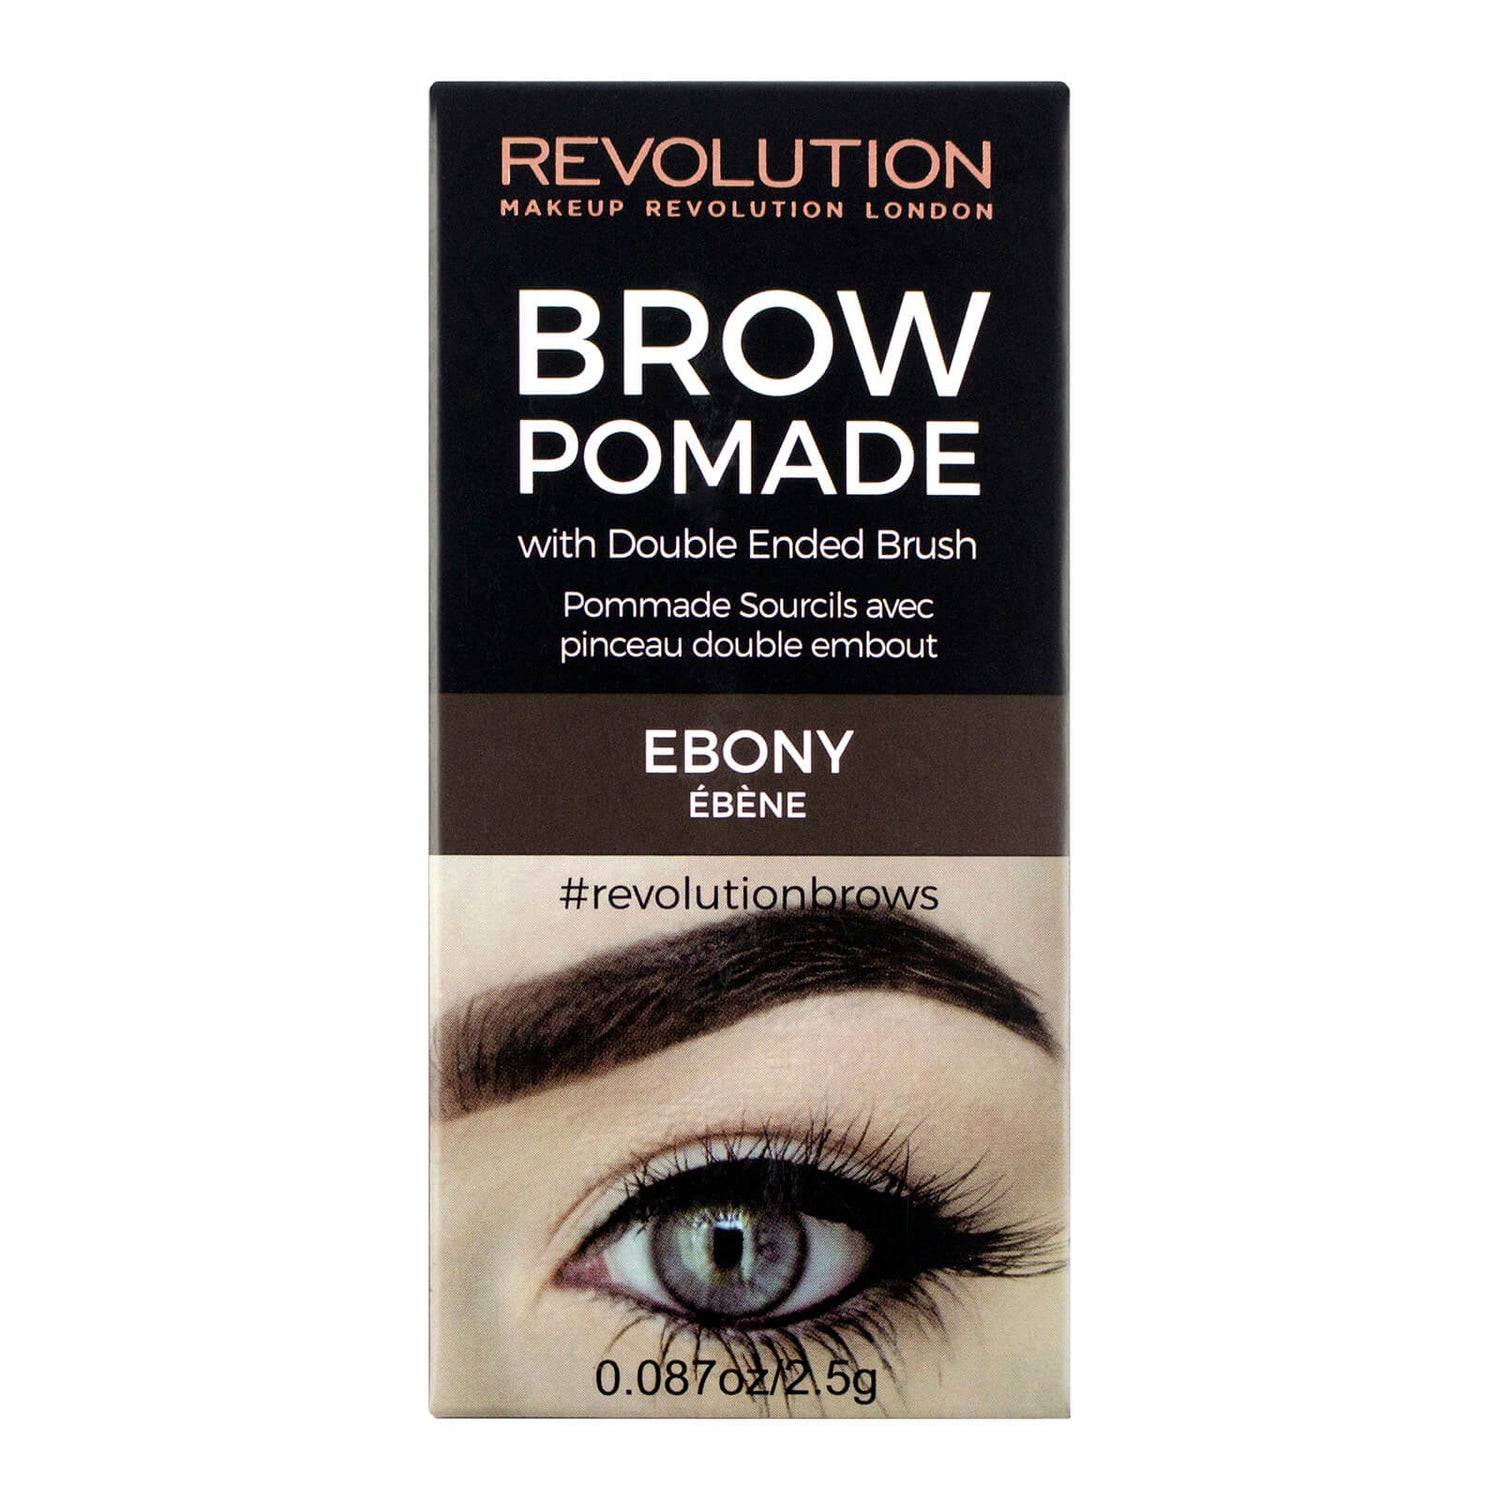 Ebony eyebrow pomade